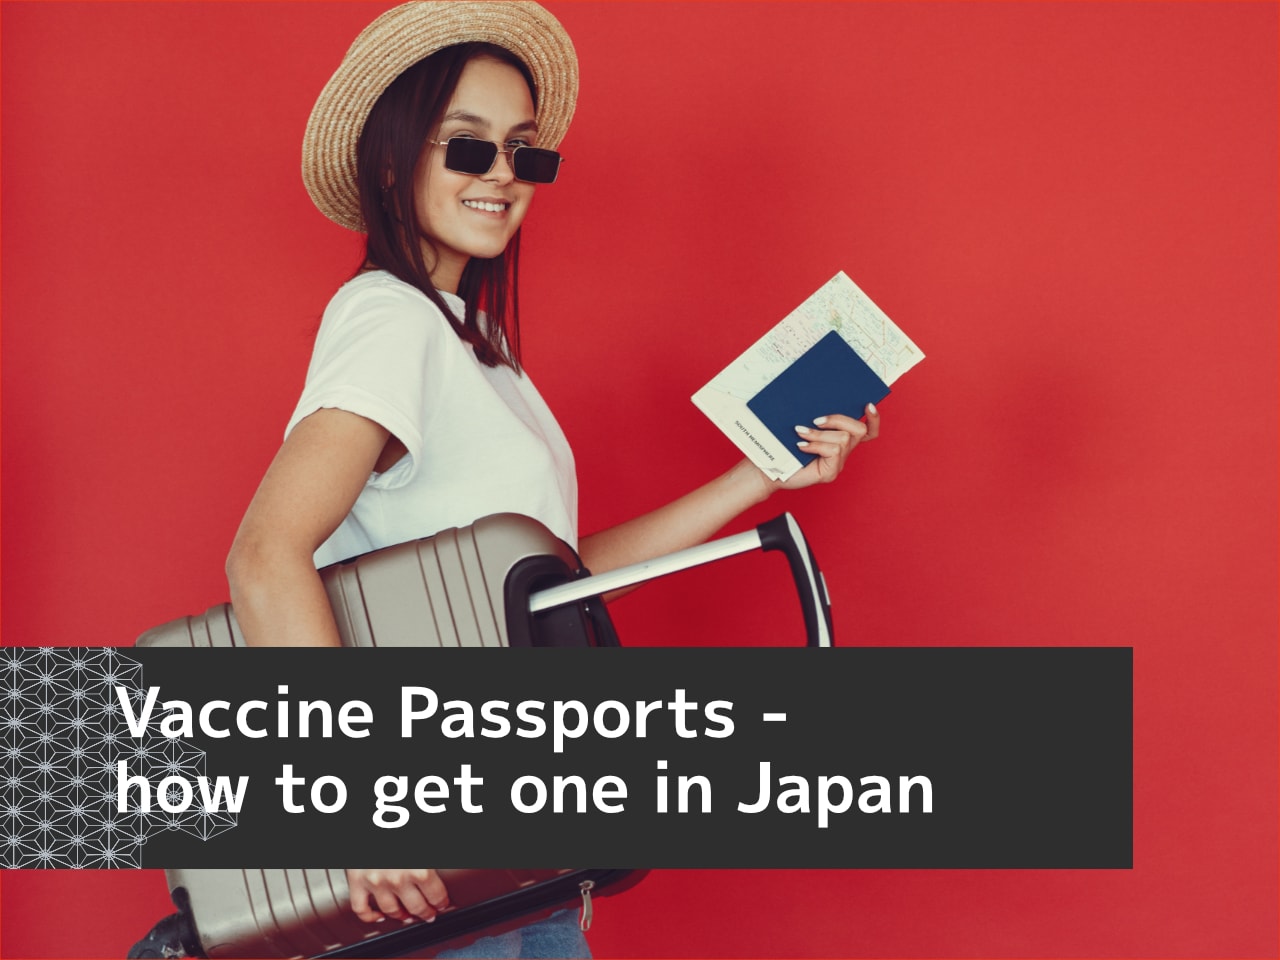 Vaccine passport in Japan